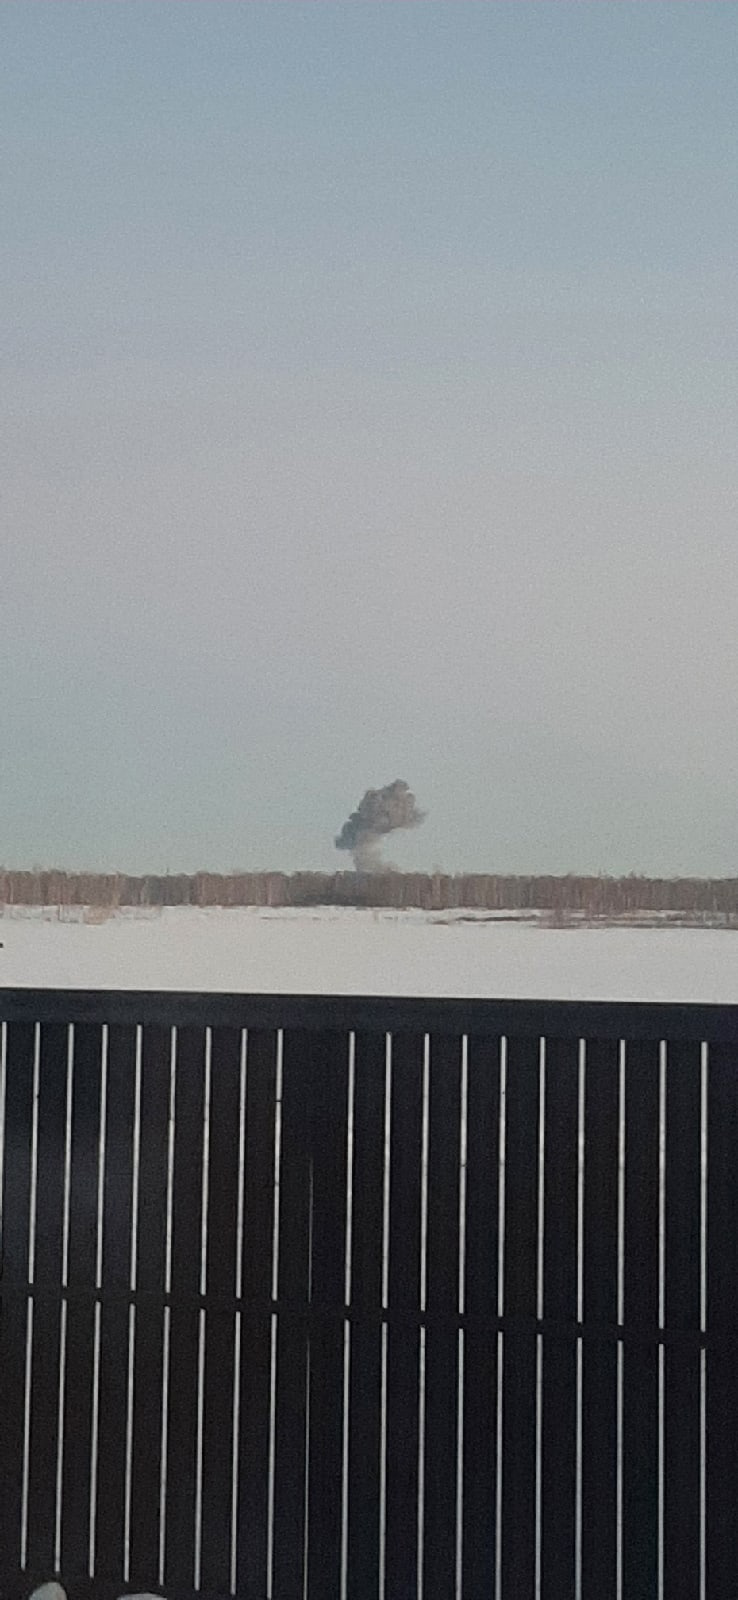 Столб дыма заметили практически во всех районах Челябинска